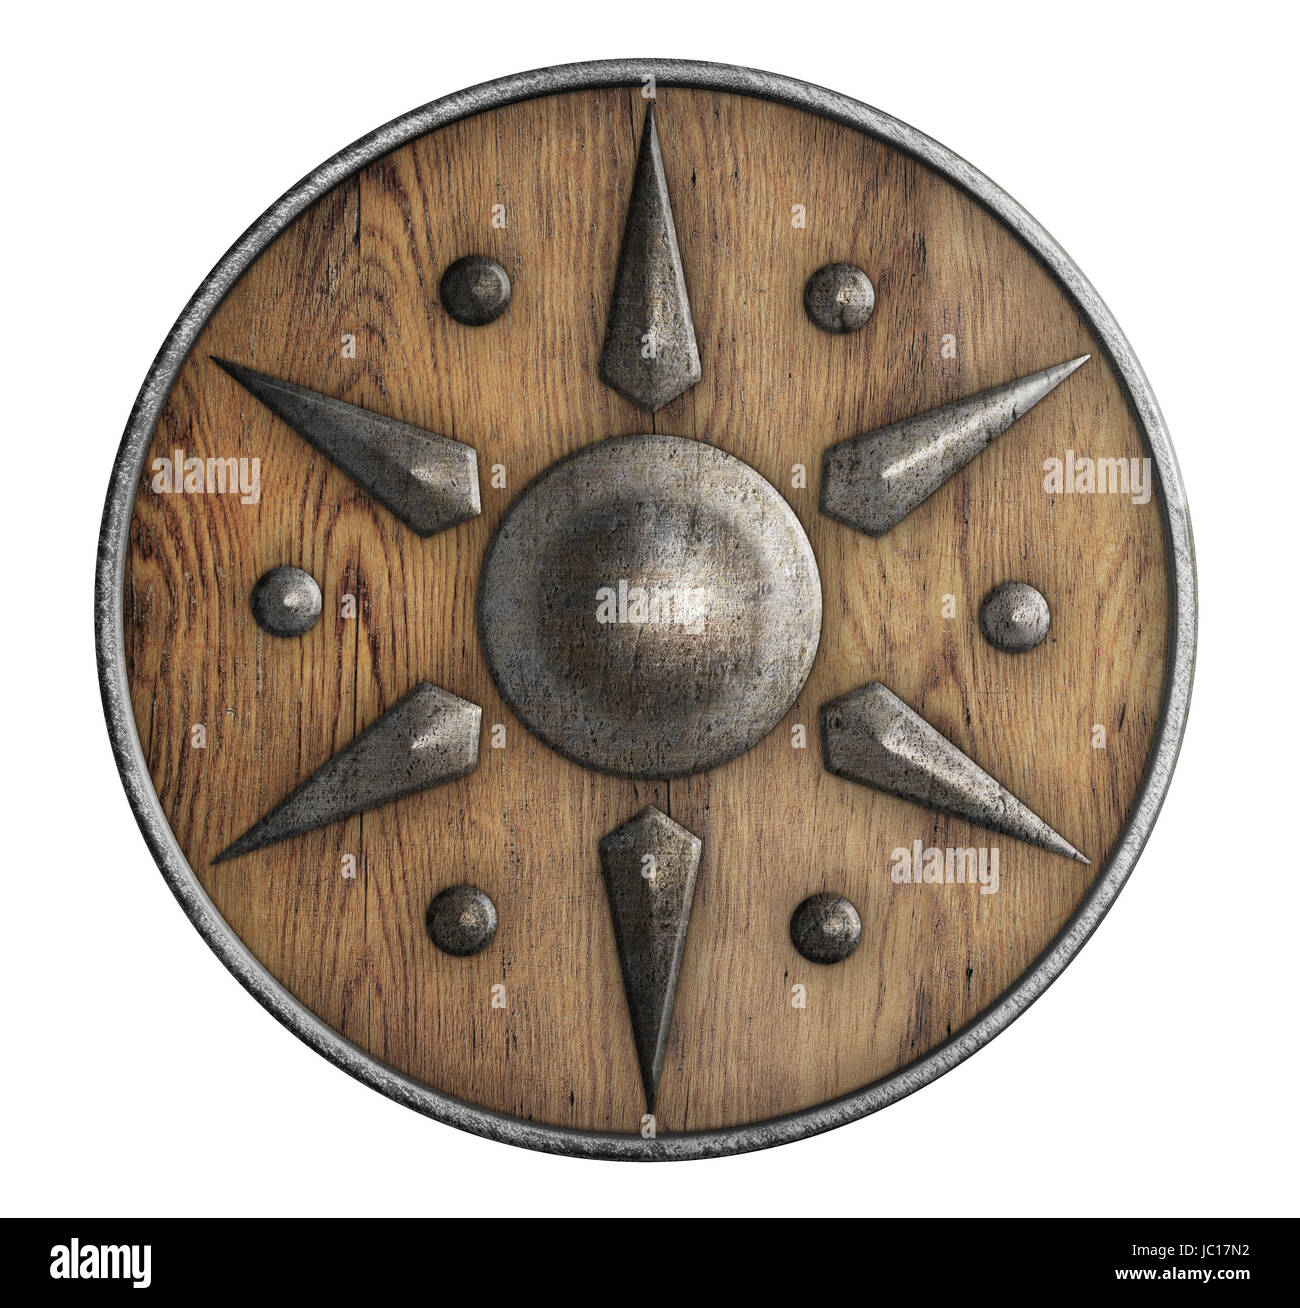 Antiguo Escudo Vikingo De Madera Con Borde Metálico Aislado En Blanco  Fotos, retratos, imágenes y fotografía de archivo libres de derecho. Image  15565171